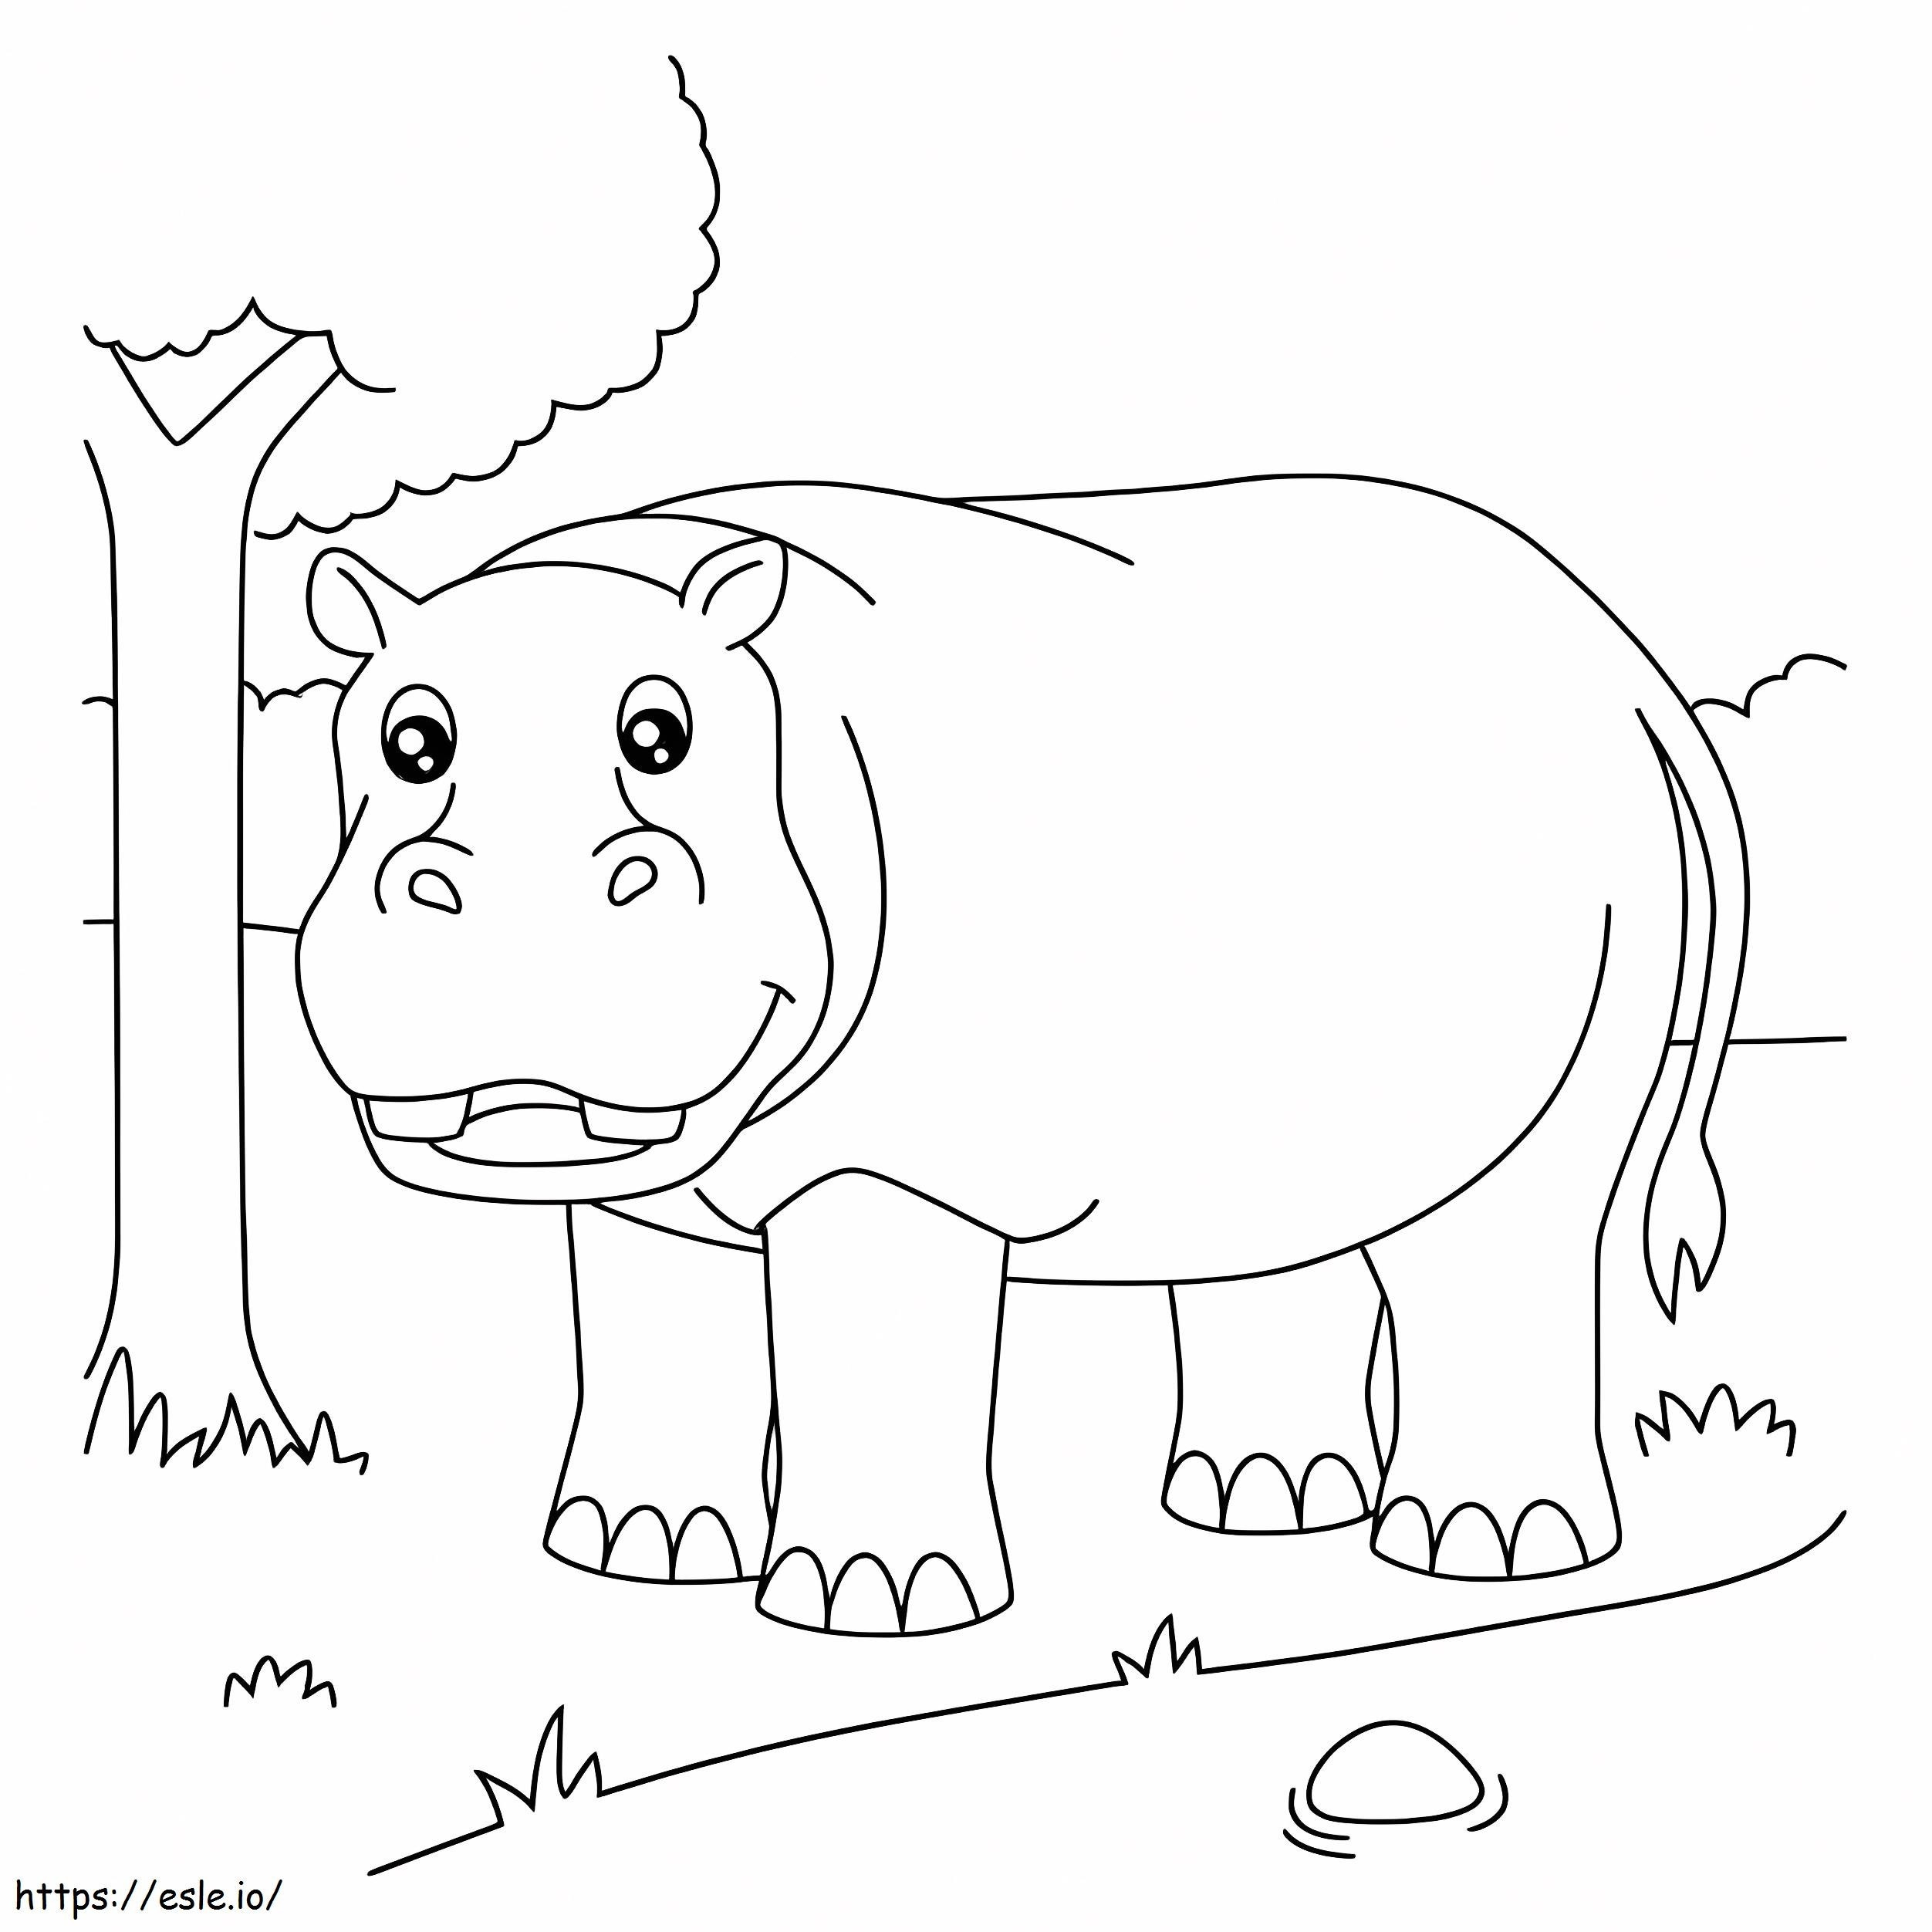 Coloriage Hippopotame et arbre à imprimer dessin